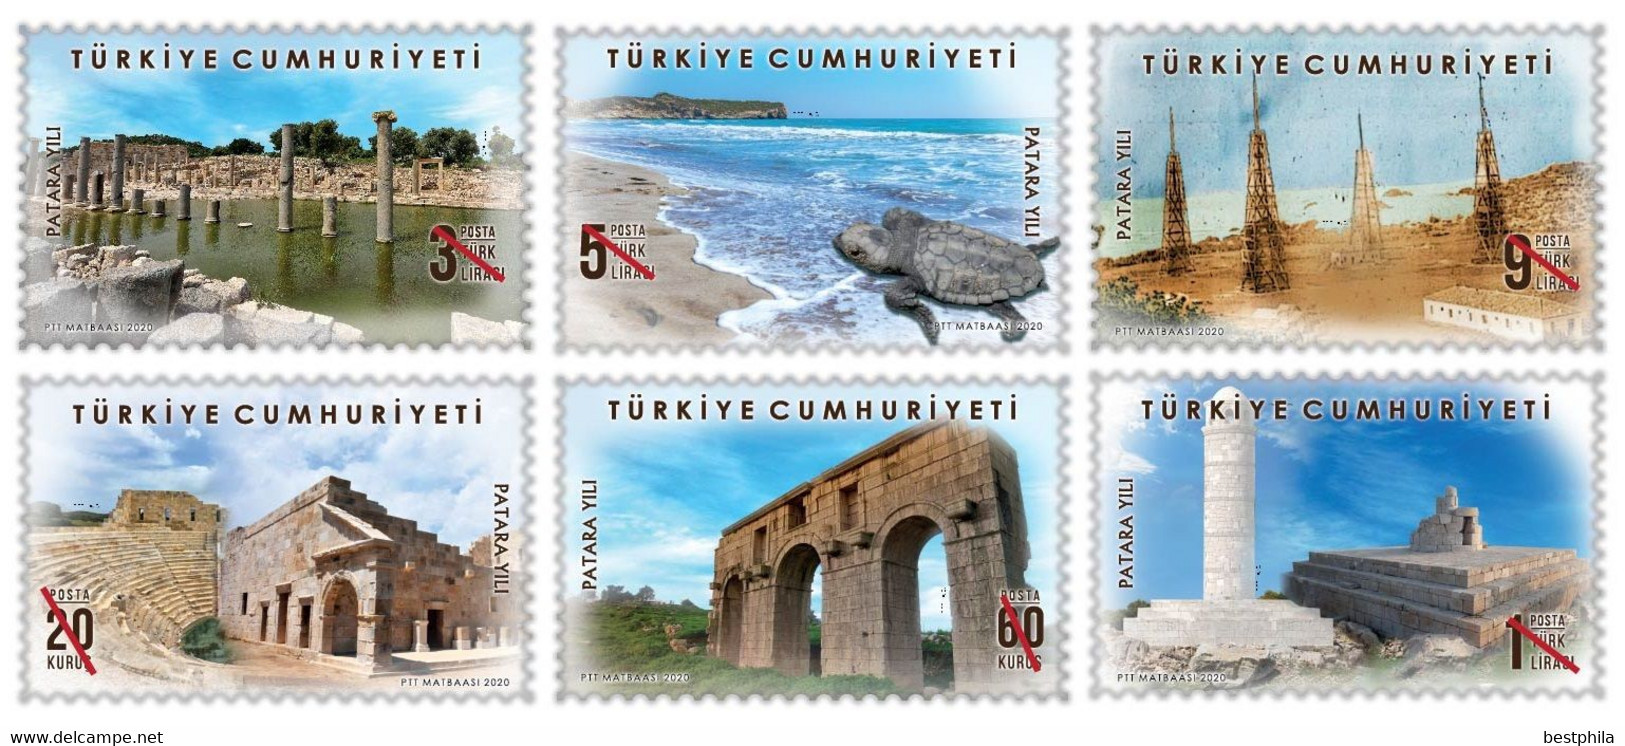 Turkey, Türkei - 2020 - Patara Year Themed Definitive Postage Stamps ** MNH - Ungebraucht